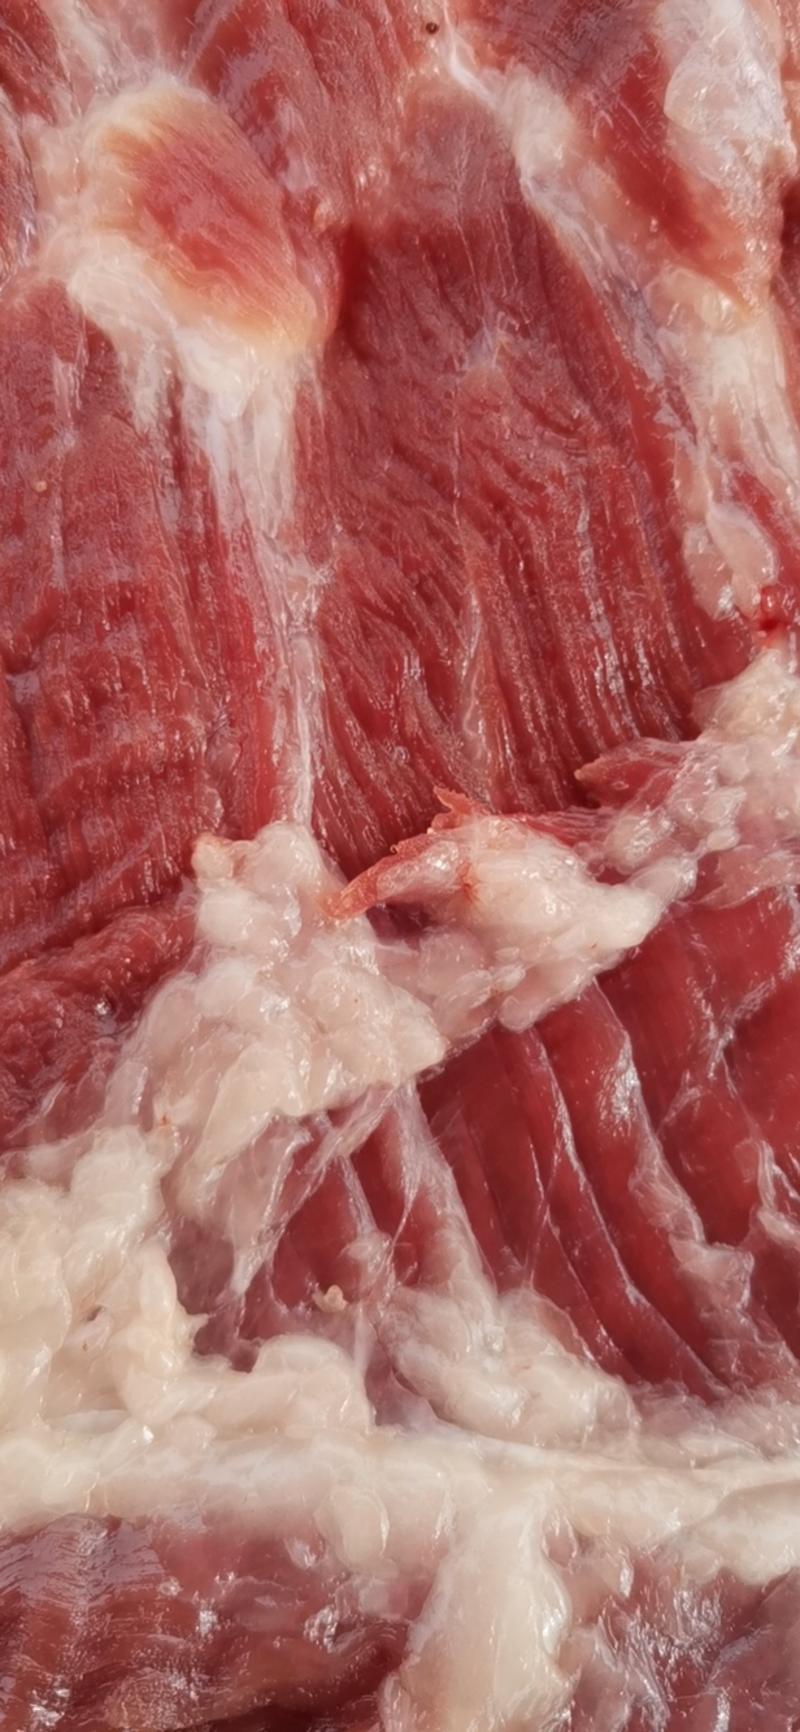 猪肉白条，鲜猪肉，冷鲜猪肉，冷鲜肉超低价批发